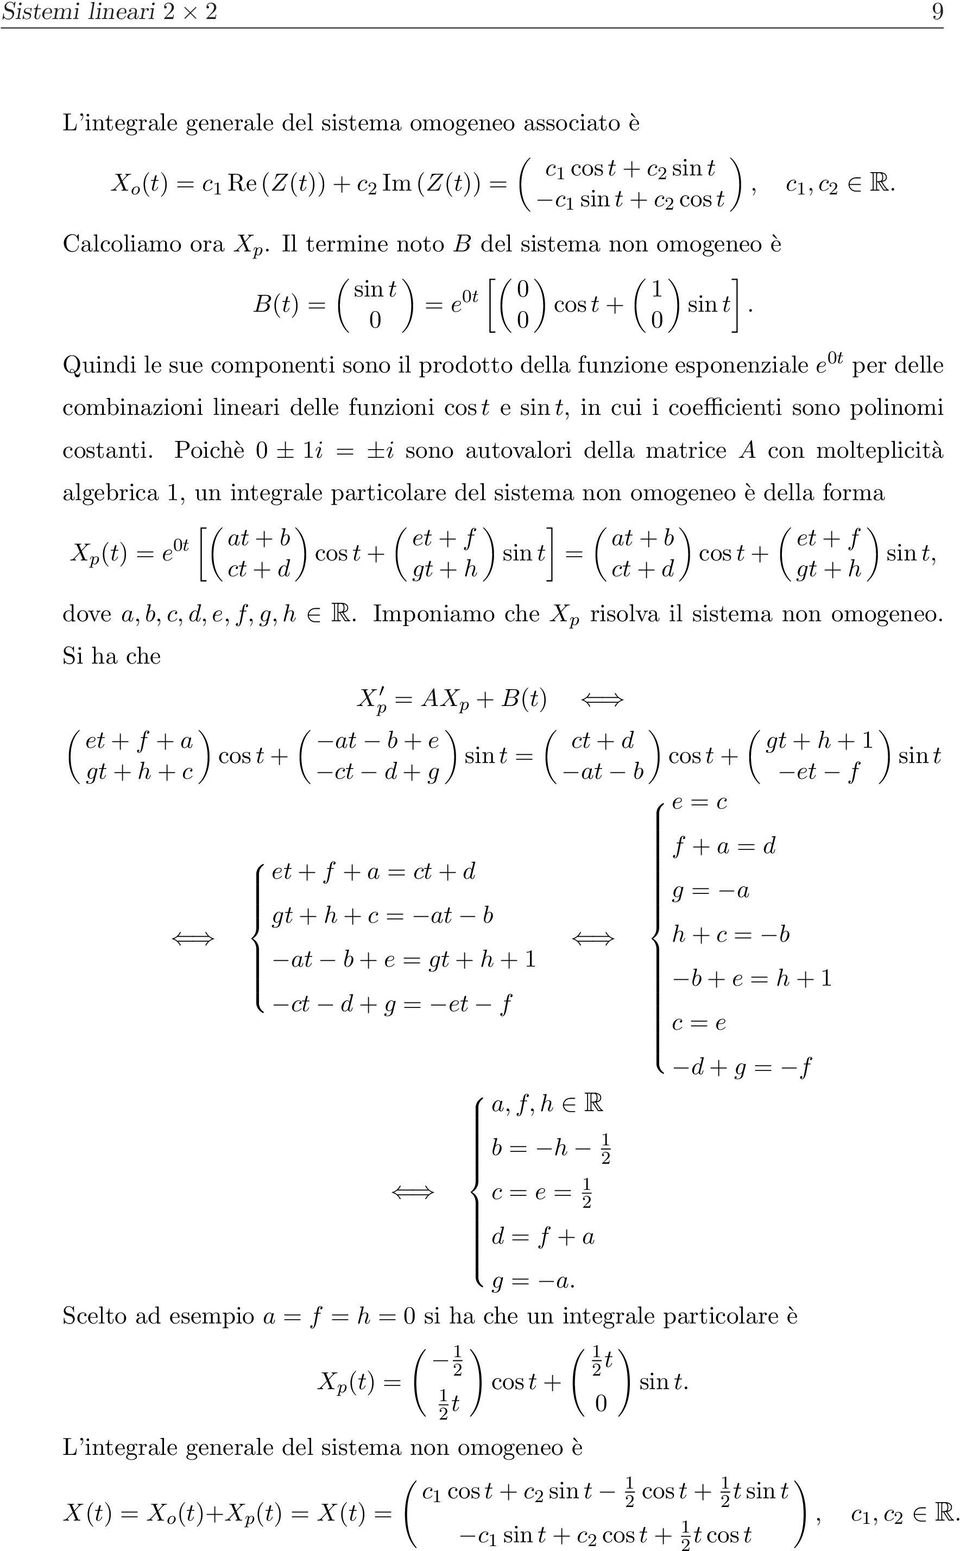 sin t, in cui i coefficienti sono polinomi costanti Poichè 0 ± 1i = ±i sono autovalori della matrice A con molteplicità algebrica 1, un integrale particolare del sistema non omogeneo è della forma [